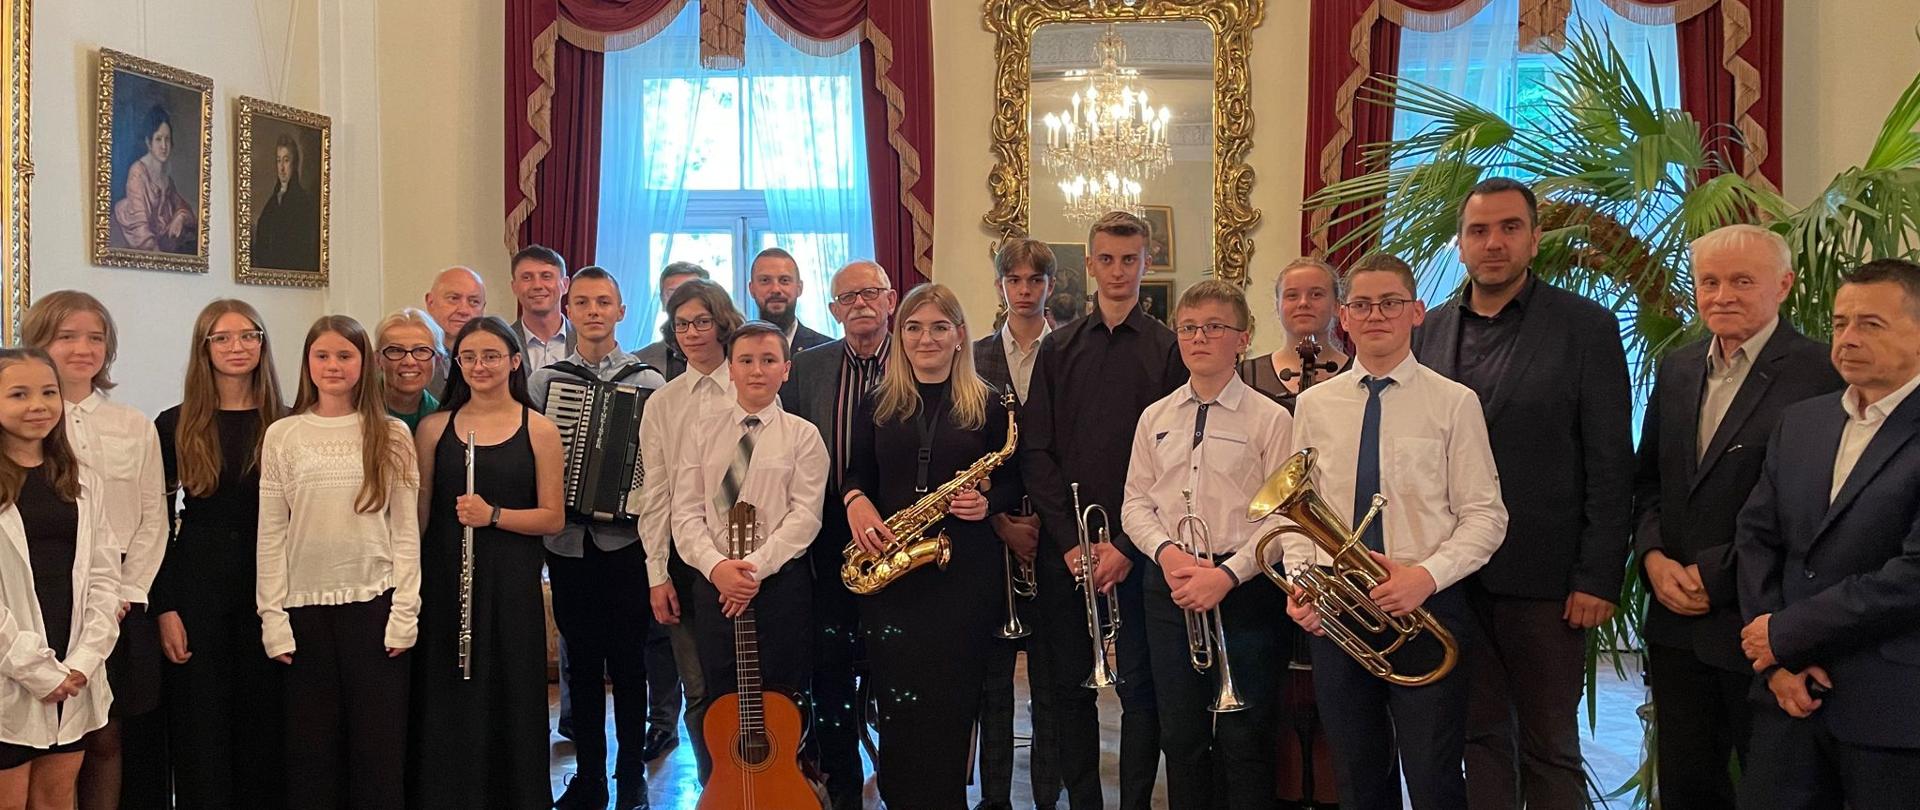 Grupa uczniów kończących szkołę z instrumentami w Sali Balowej pałacu Lubomirskich w Przeworsku.